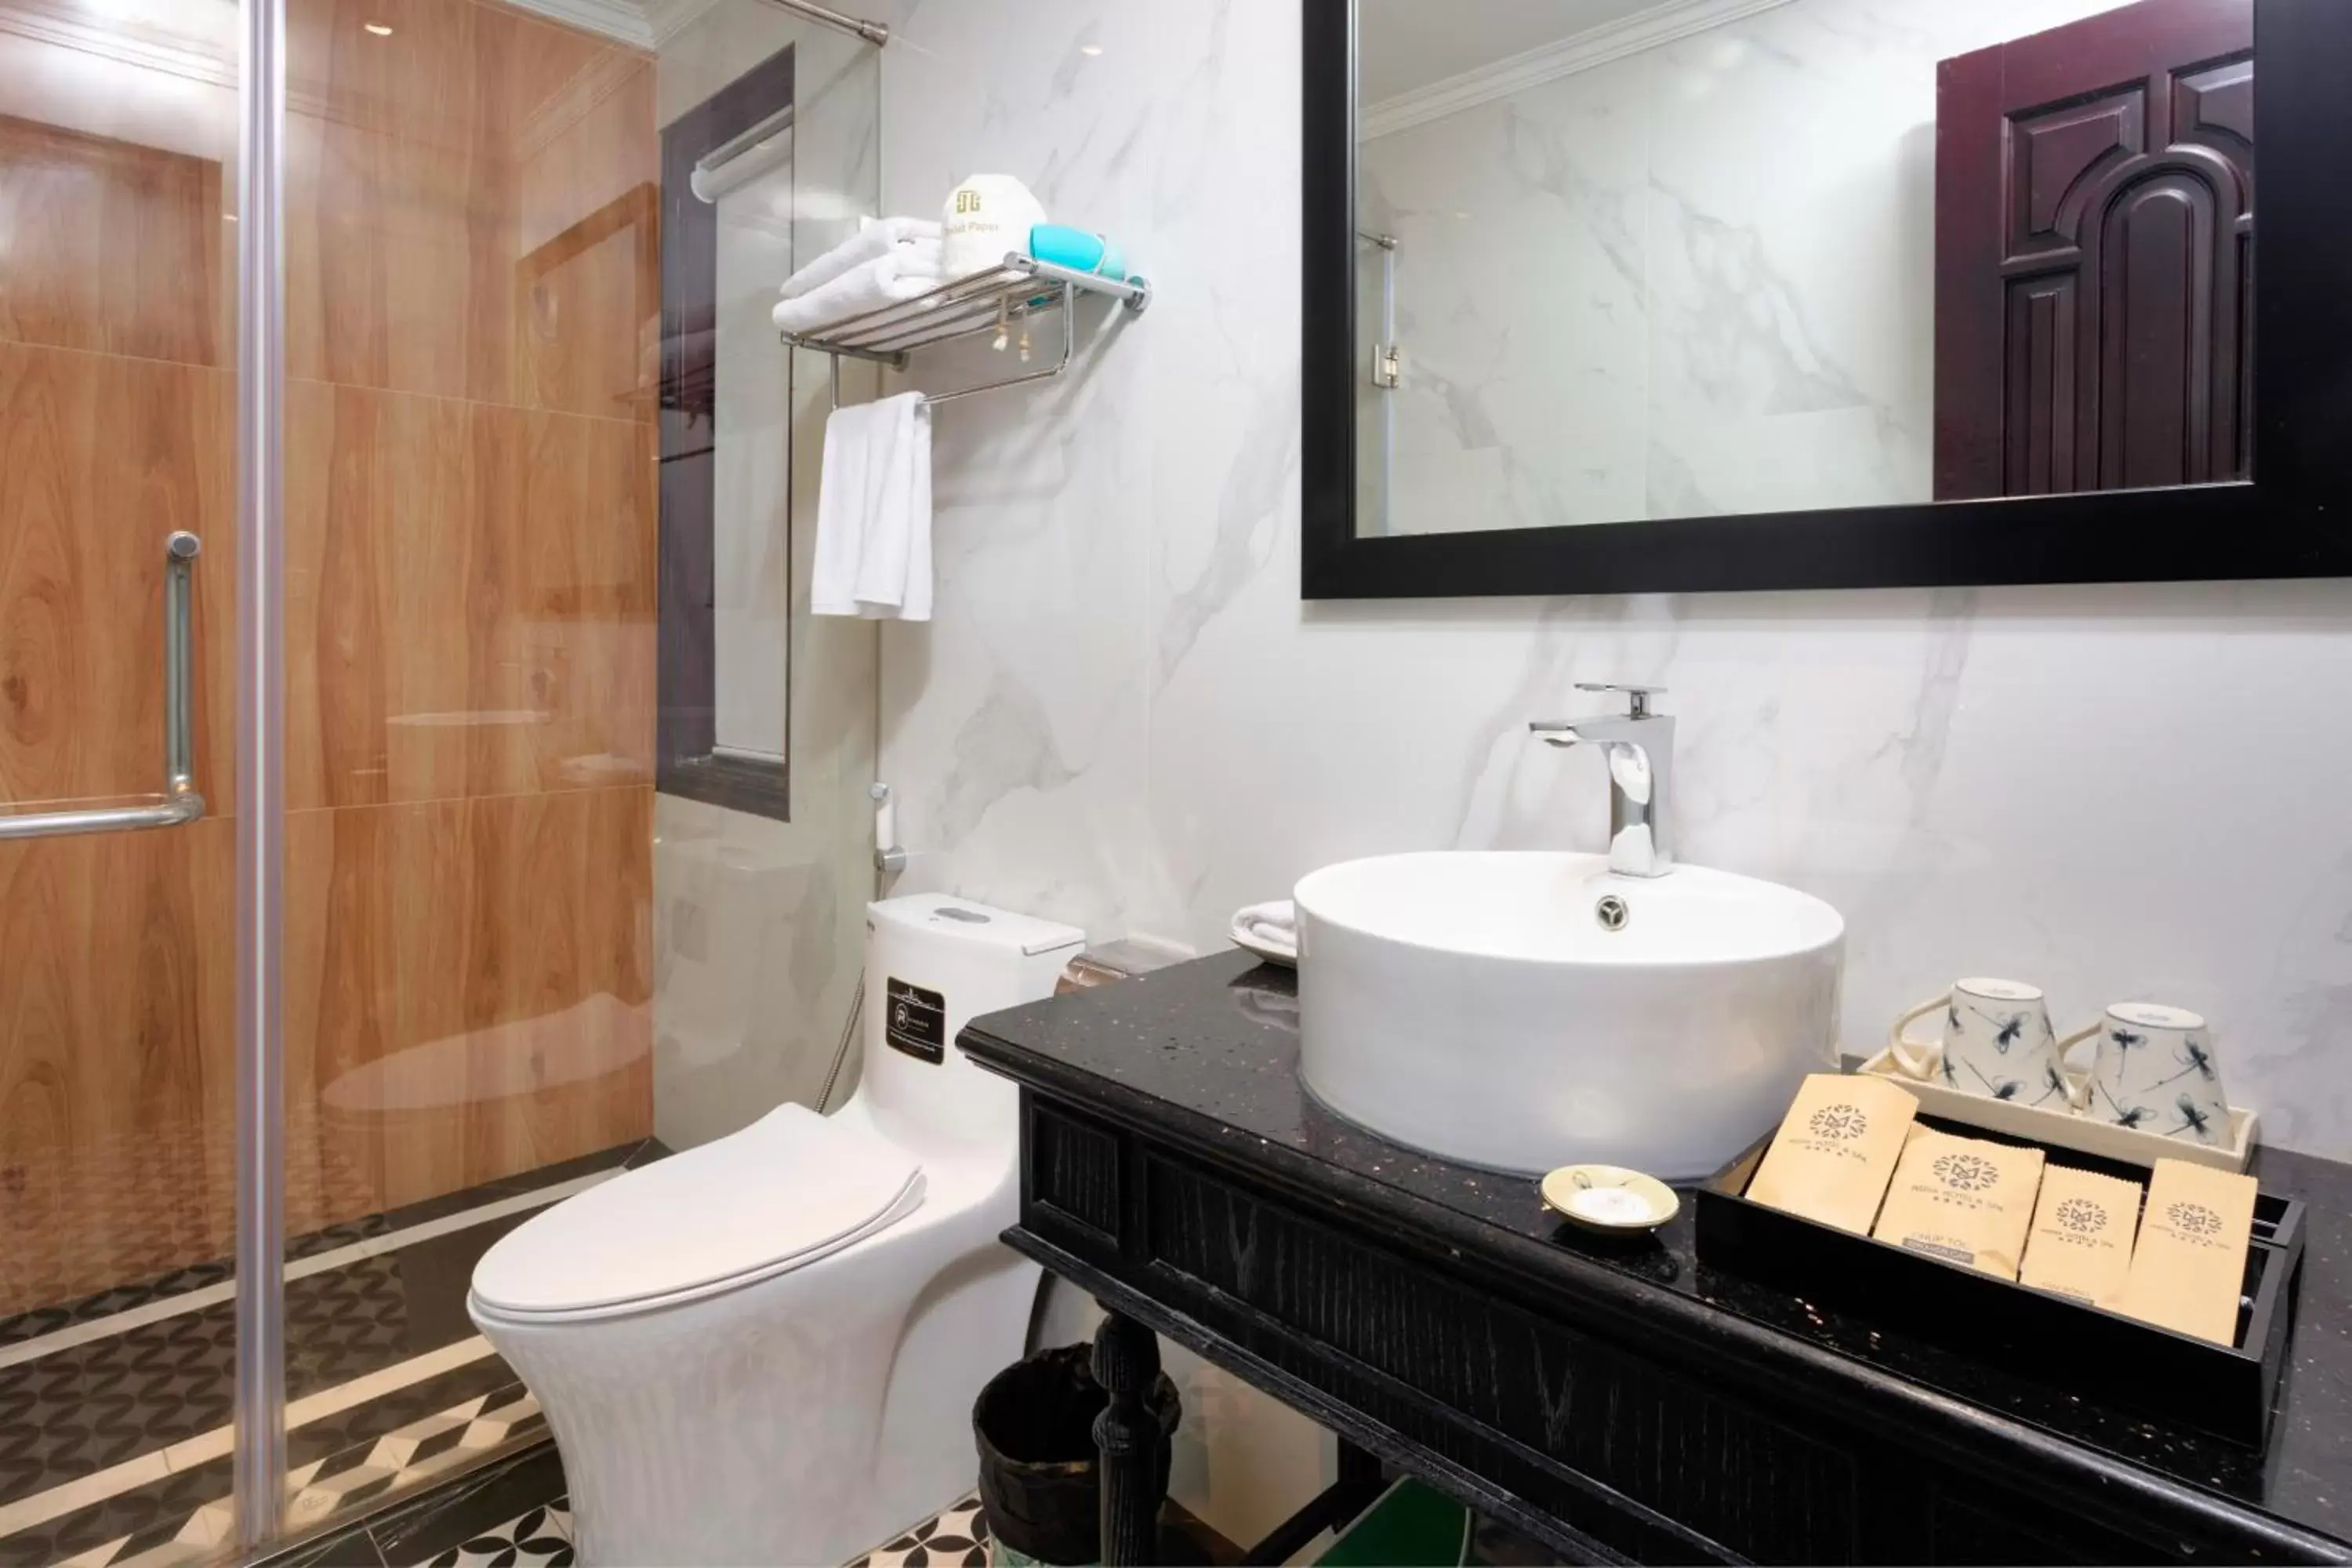 Shower, Bathroom in Hanoi Media Hotel & Spa